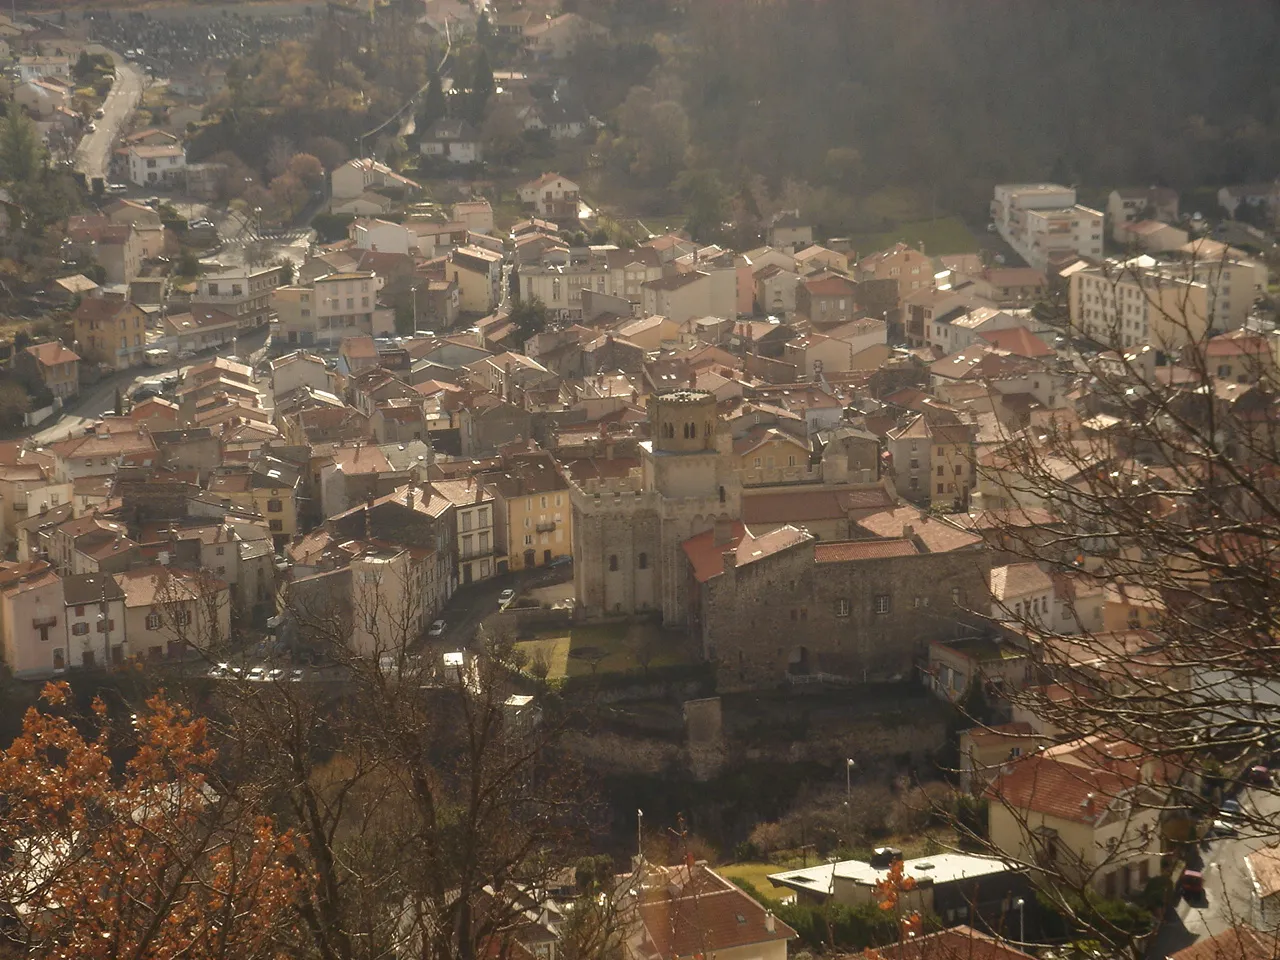 Bilde av Auvergne